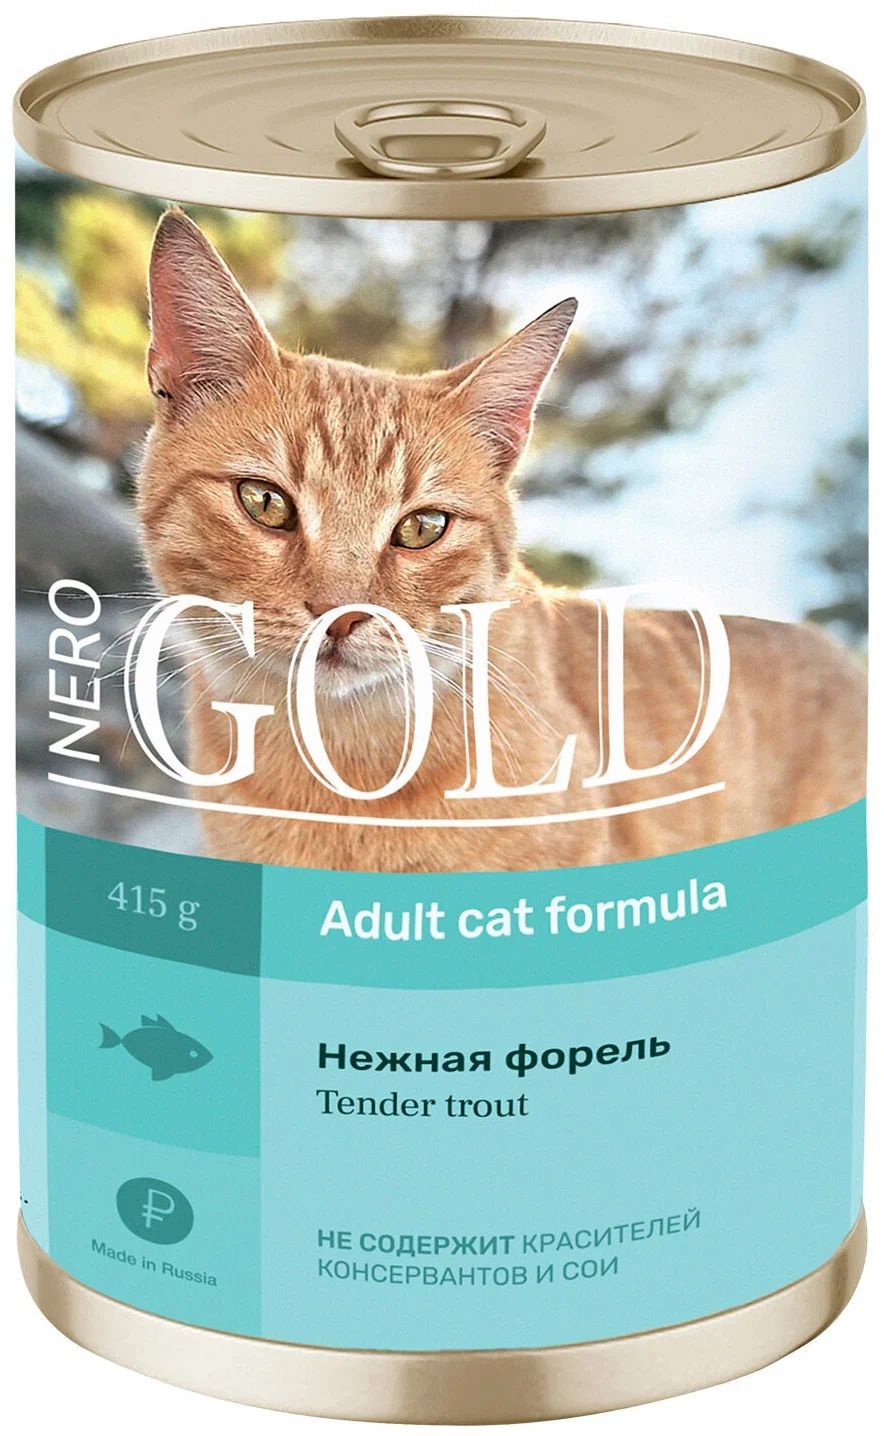 Консервы для кошек Nero Gold Adult с нежной форелью, 12шт по 415г